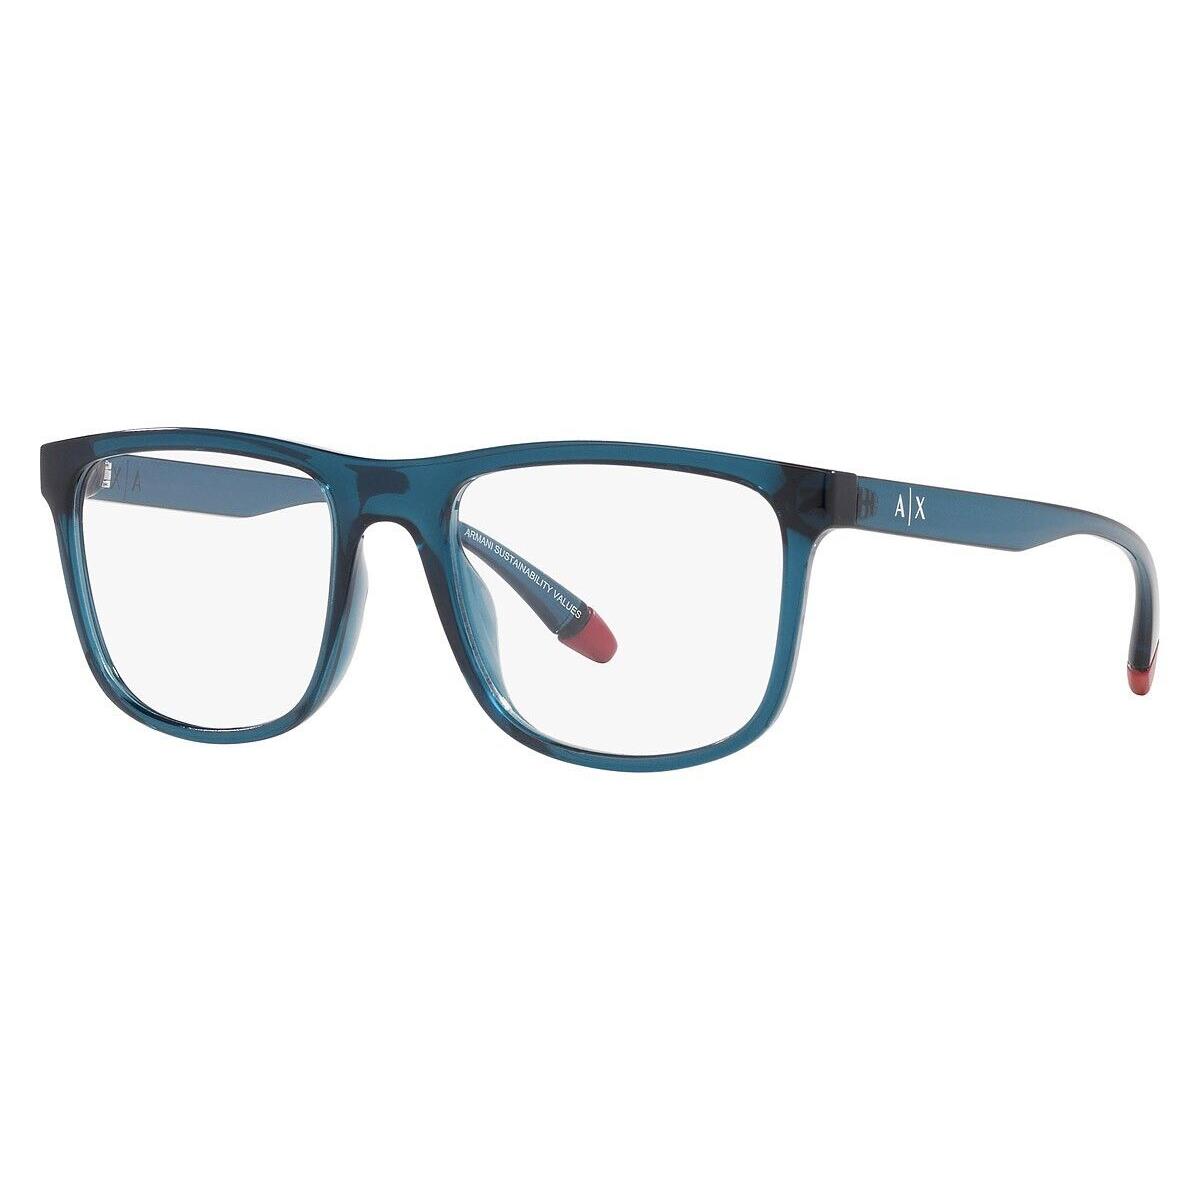 Armani Exchange Eyeglasses 0AX3101U 8187 Blue Frame 55MM Rx-able